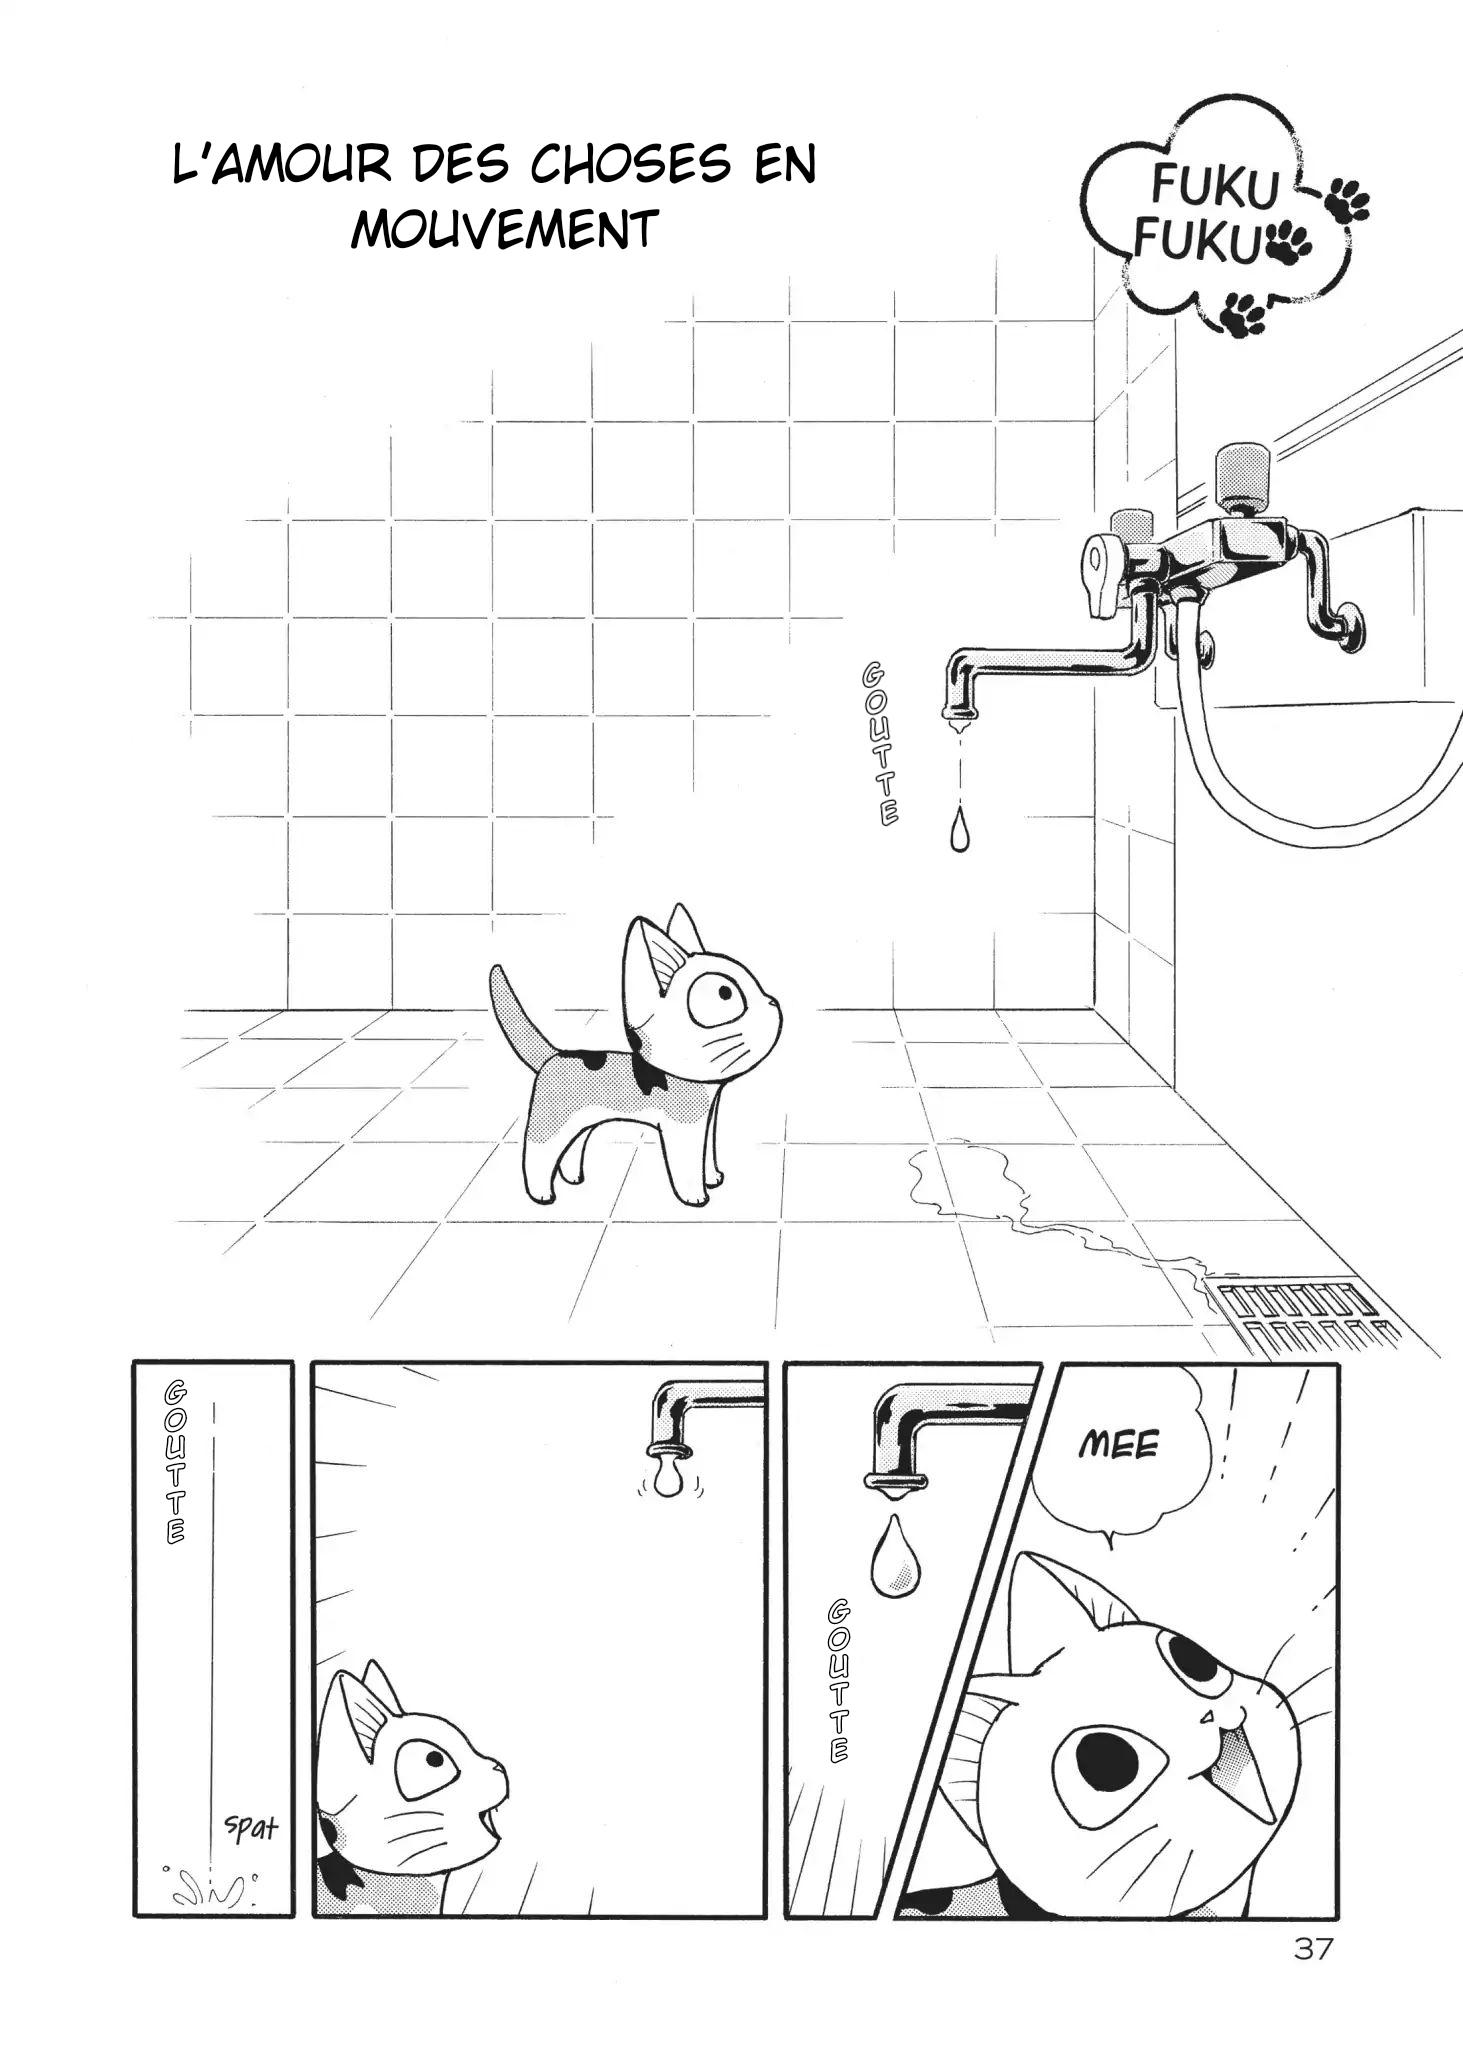 FukuFuku: Kitten Tales: Chapter 6 - Page 1